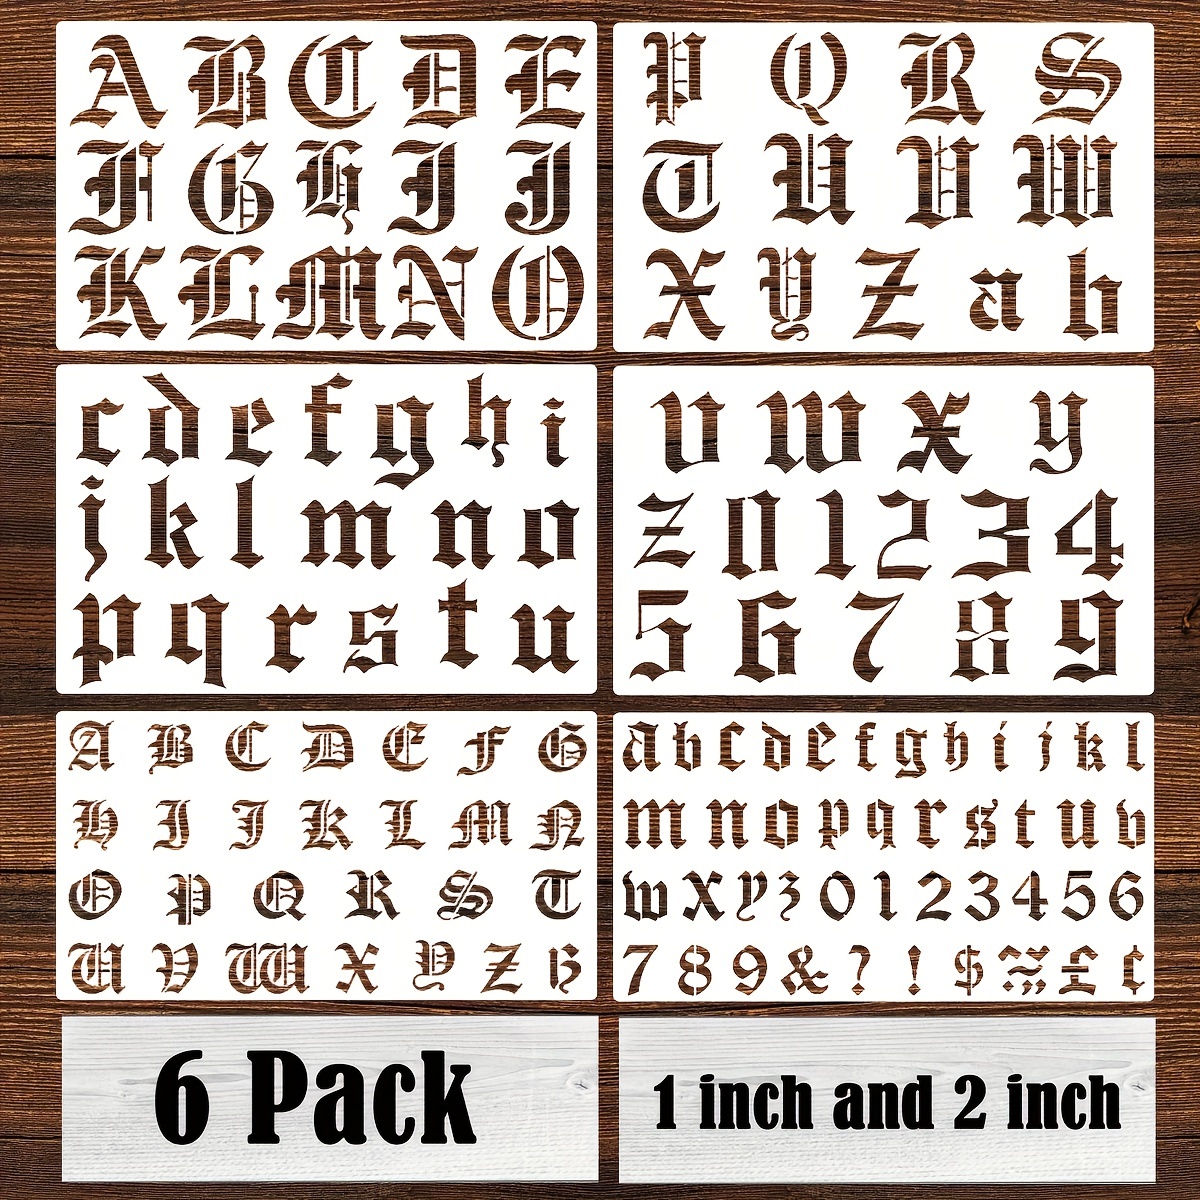 English Gothic Font Alphabet M  Gothic alphabet, Old english tattoo,  Gothic fonts